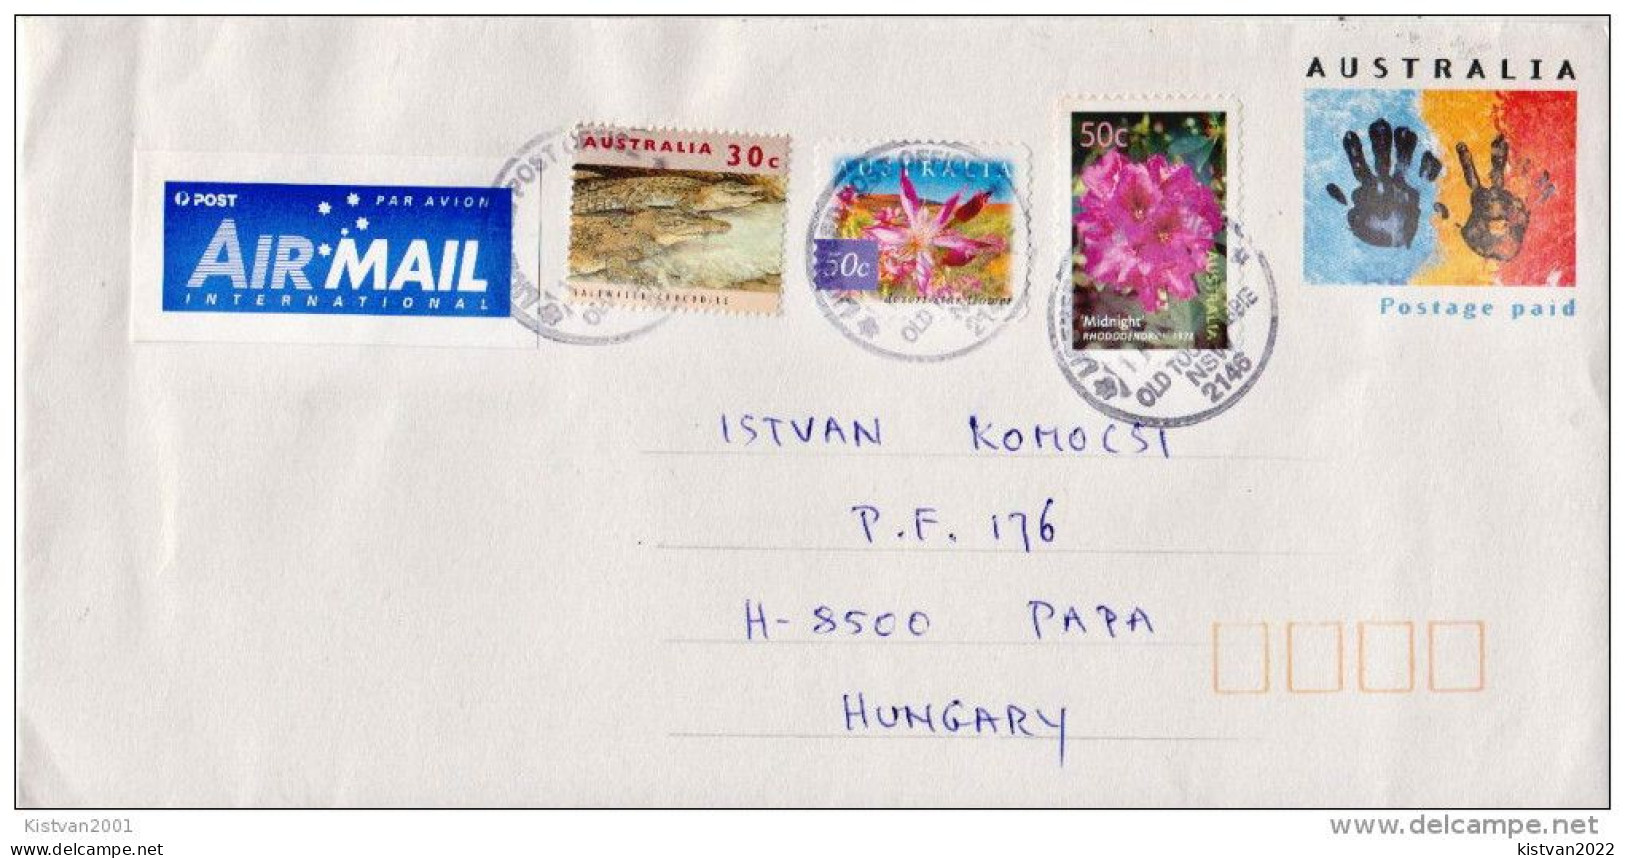 Postal History: Australia Postal Stationery Cover - Postal Stationery